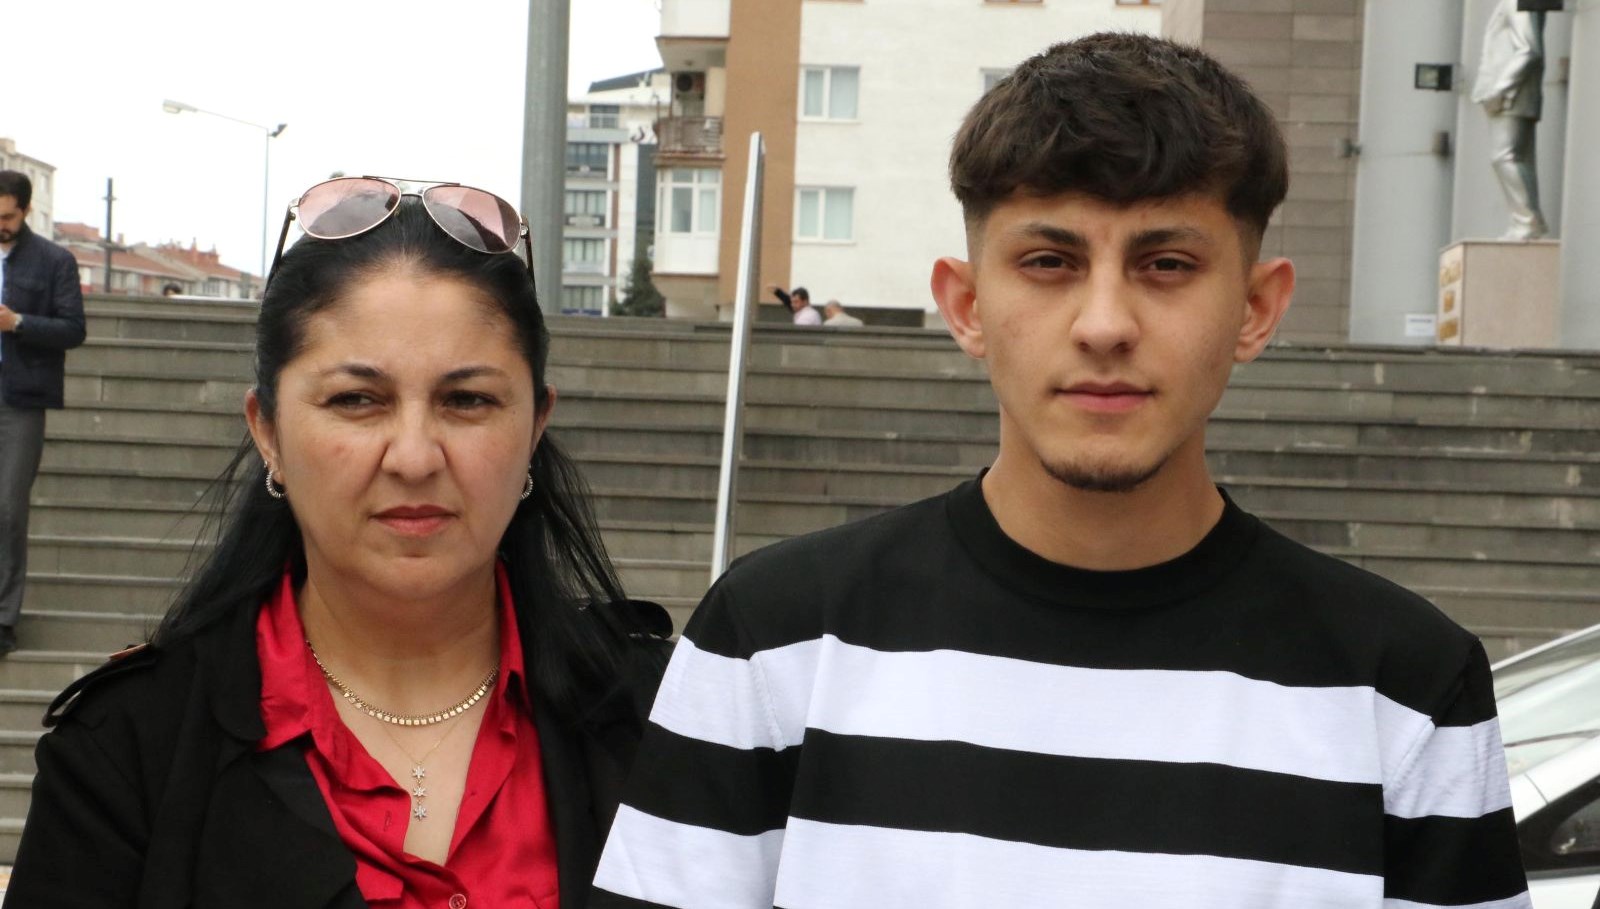 2’nci Kadir Şeker olayında 5 yıl mahpus cezası